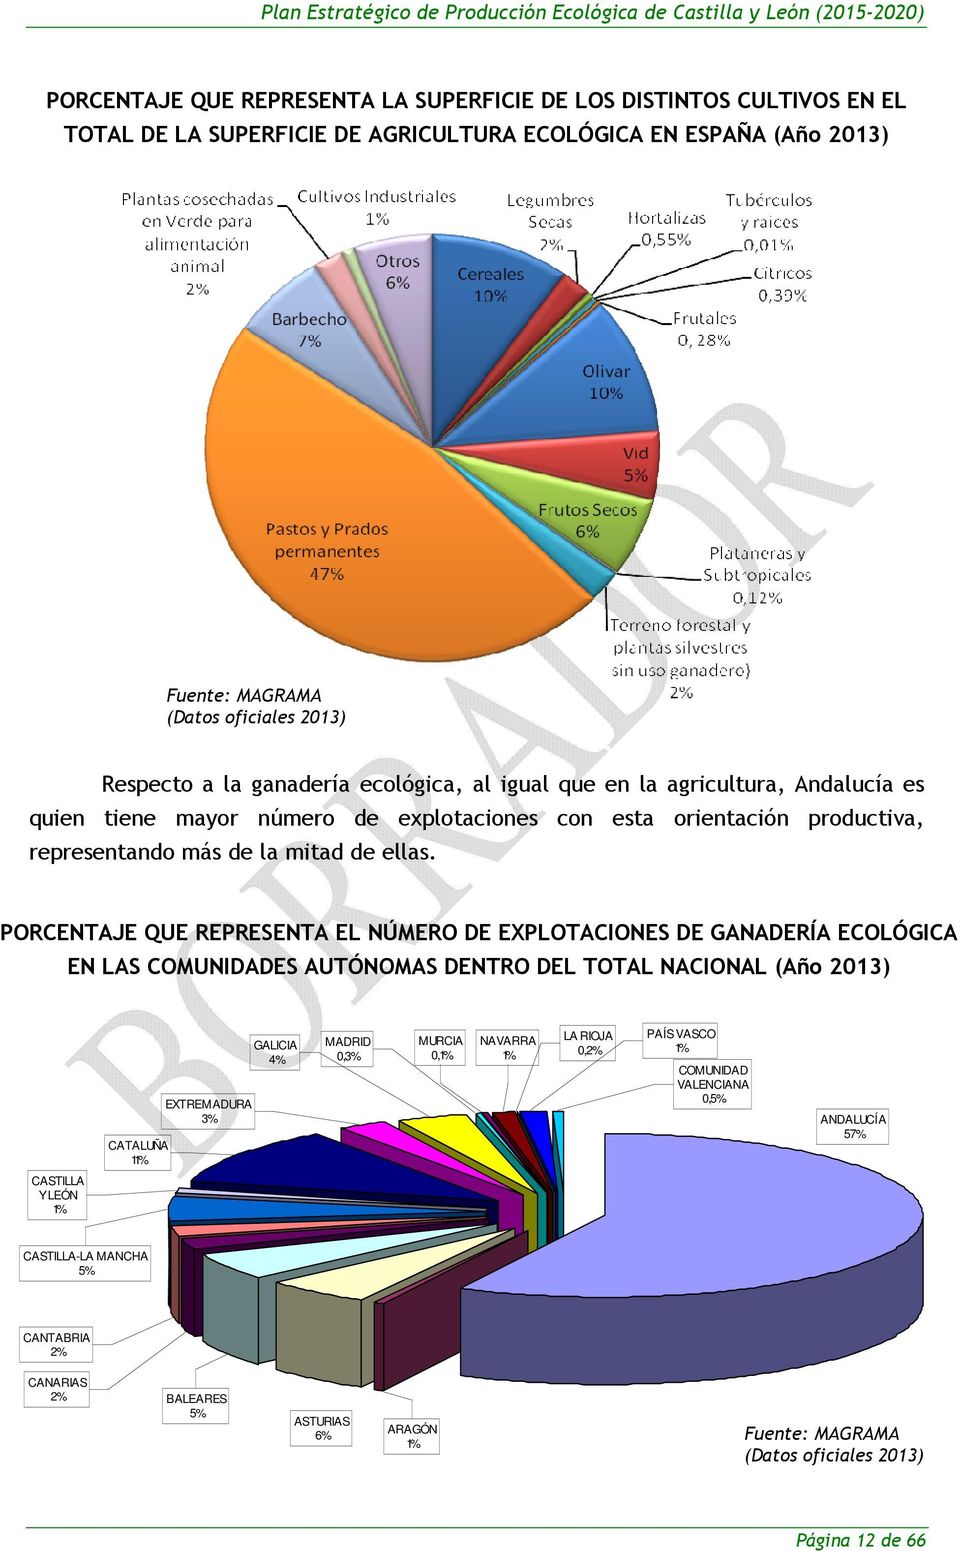 PORCENTAJE QUE REPRESENTA EL NÚMERO DE EXPLOTACIONES DE GANADERÍA ECOLÓGICA EN LAS COMUNIDADES AUTÓNOMAS DENTRO DEL TOTAL NACIONAL (Año 2013) CATALUÑA 11% EXTREMADURA 3% GALICIA 4% MADRID 0,3% MURCIA